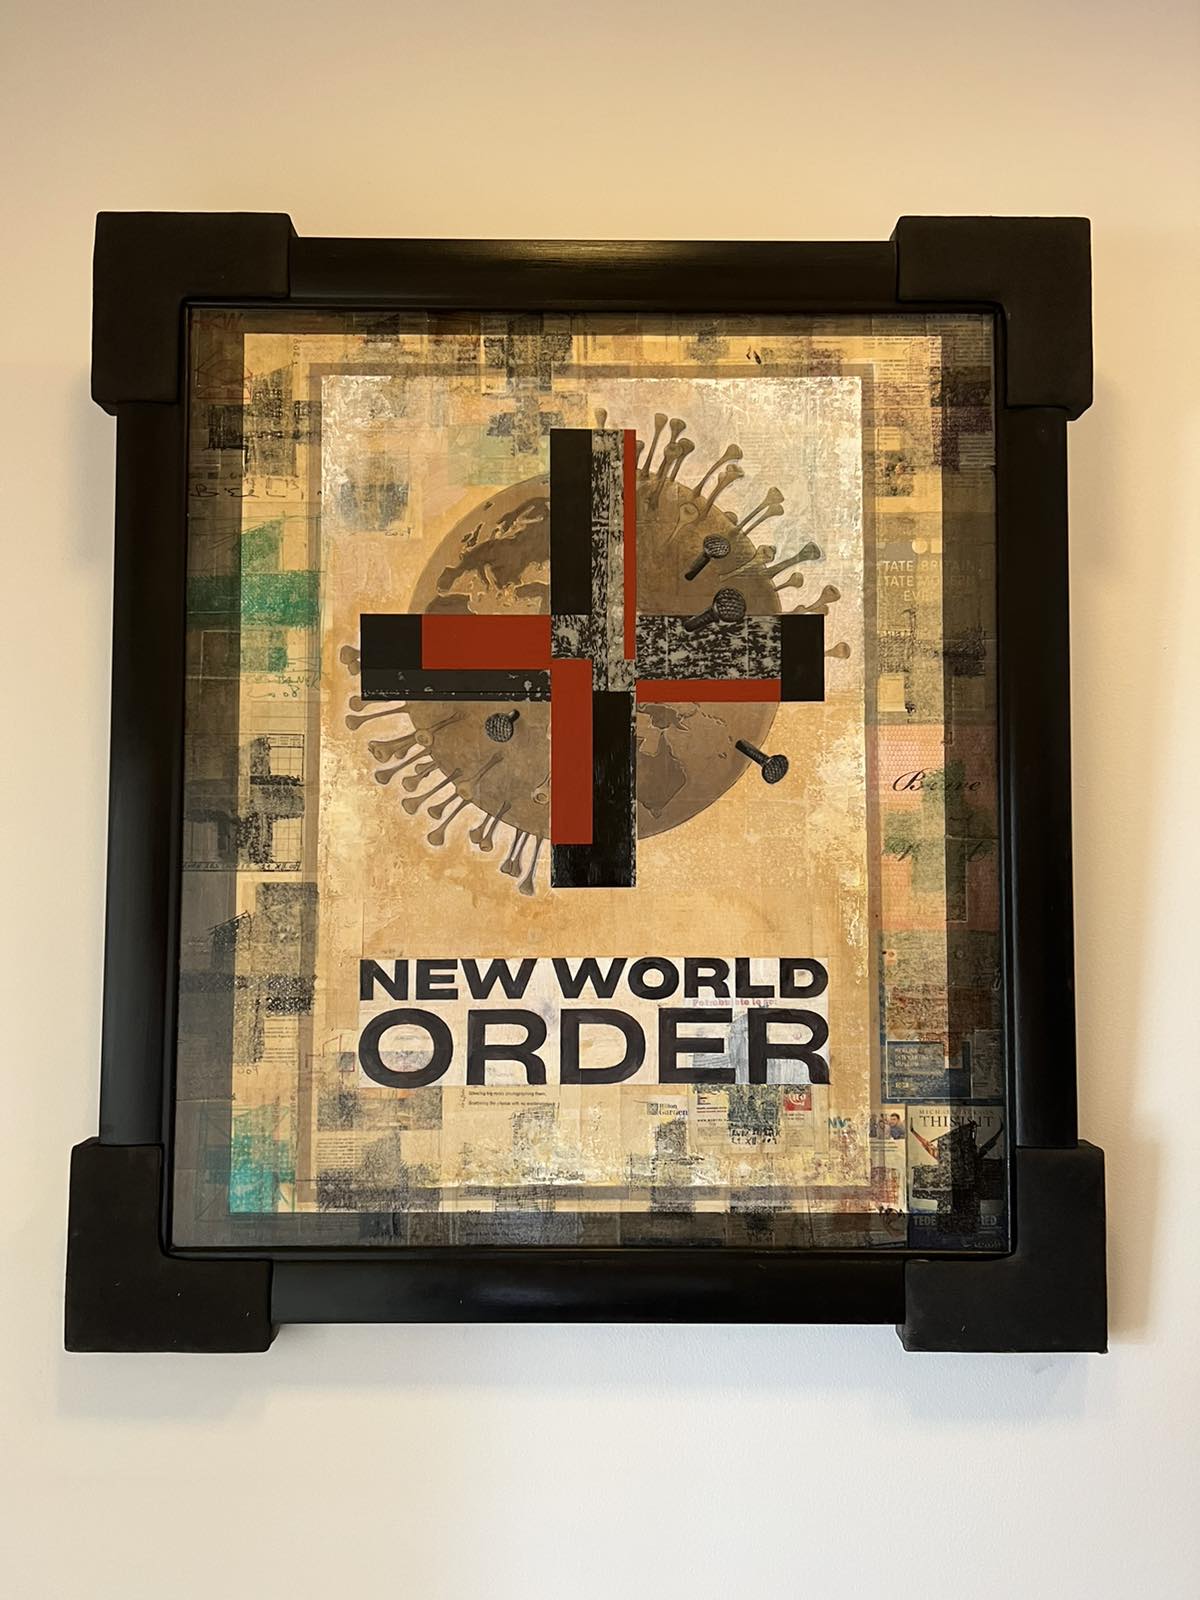 “Boj se nadaljuje papir izgublja” – “New World Order” ena zadnjih slik Romana Uranjeka, ki jo je pred smrtjo podaril svojemu prijatelju